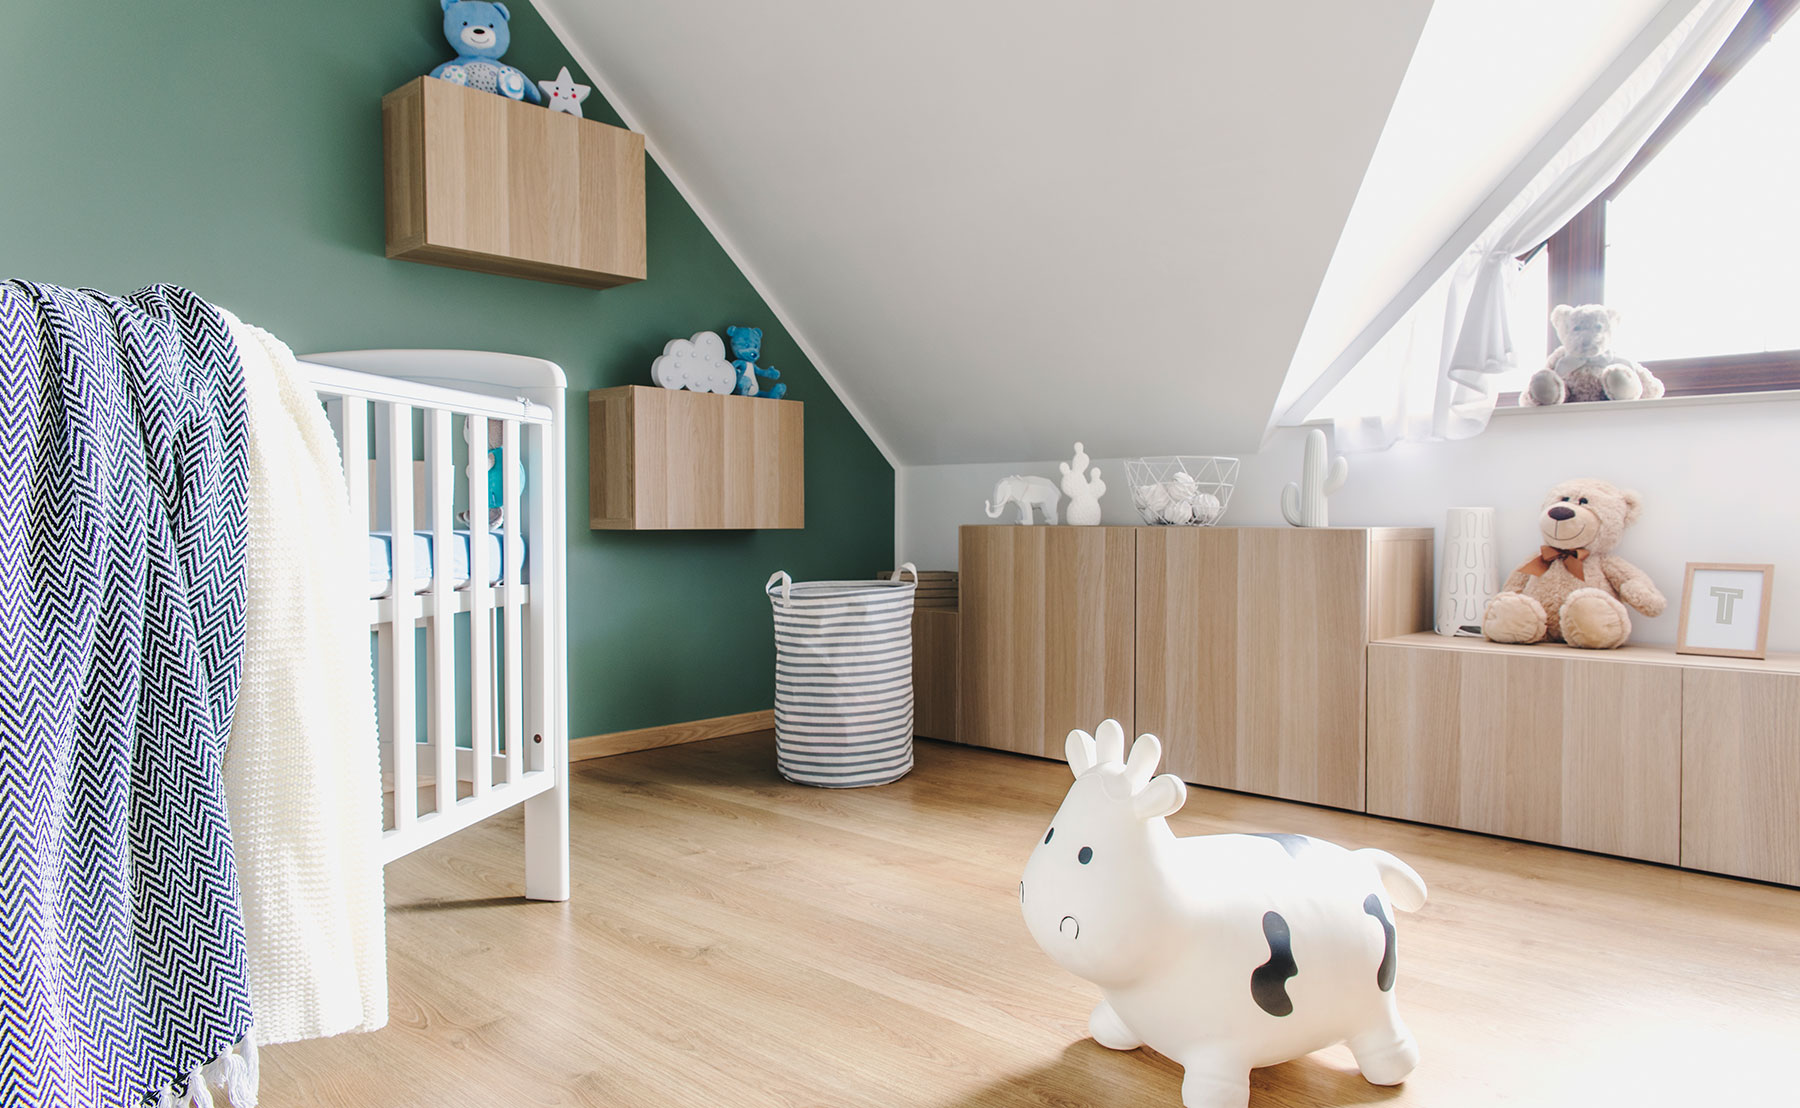 Skandinavisk indrettet børneværelse med en seng og legetøj på gulvet.